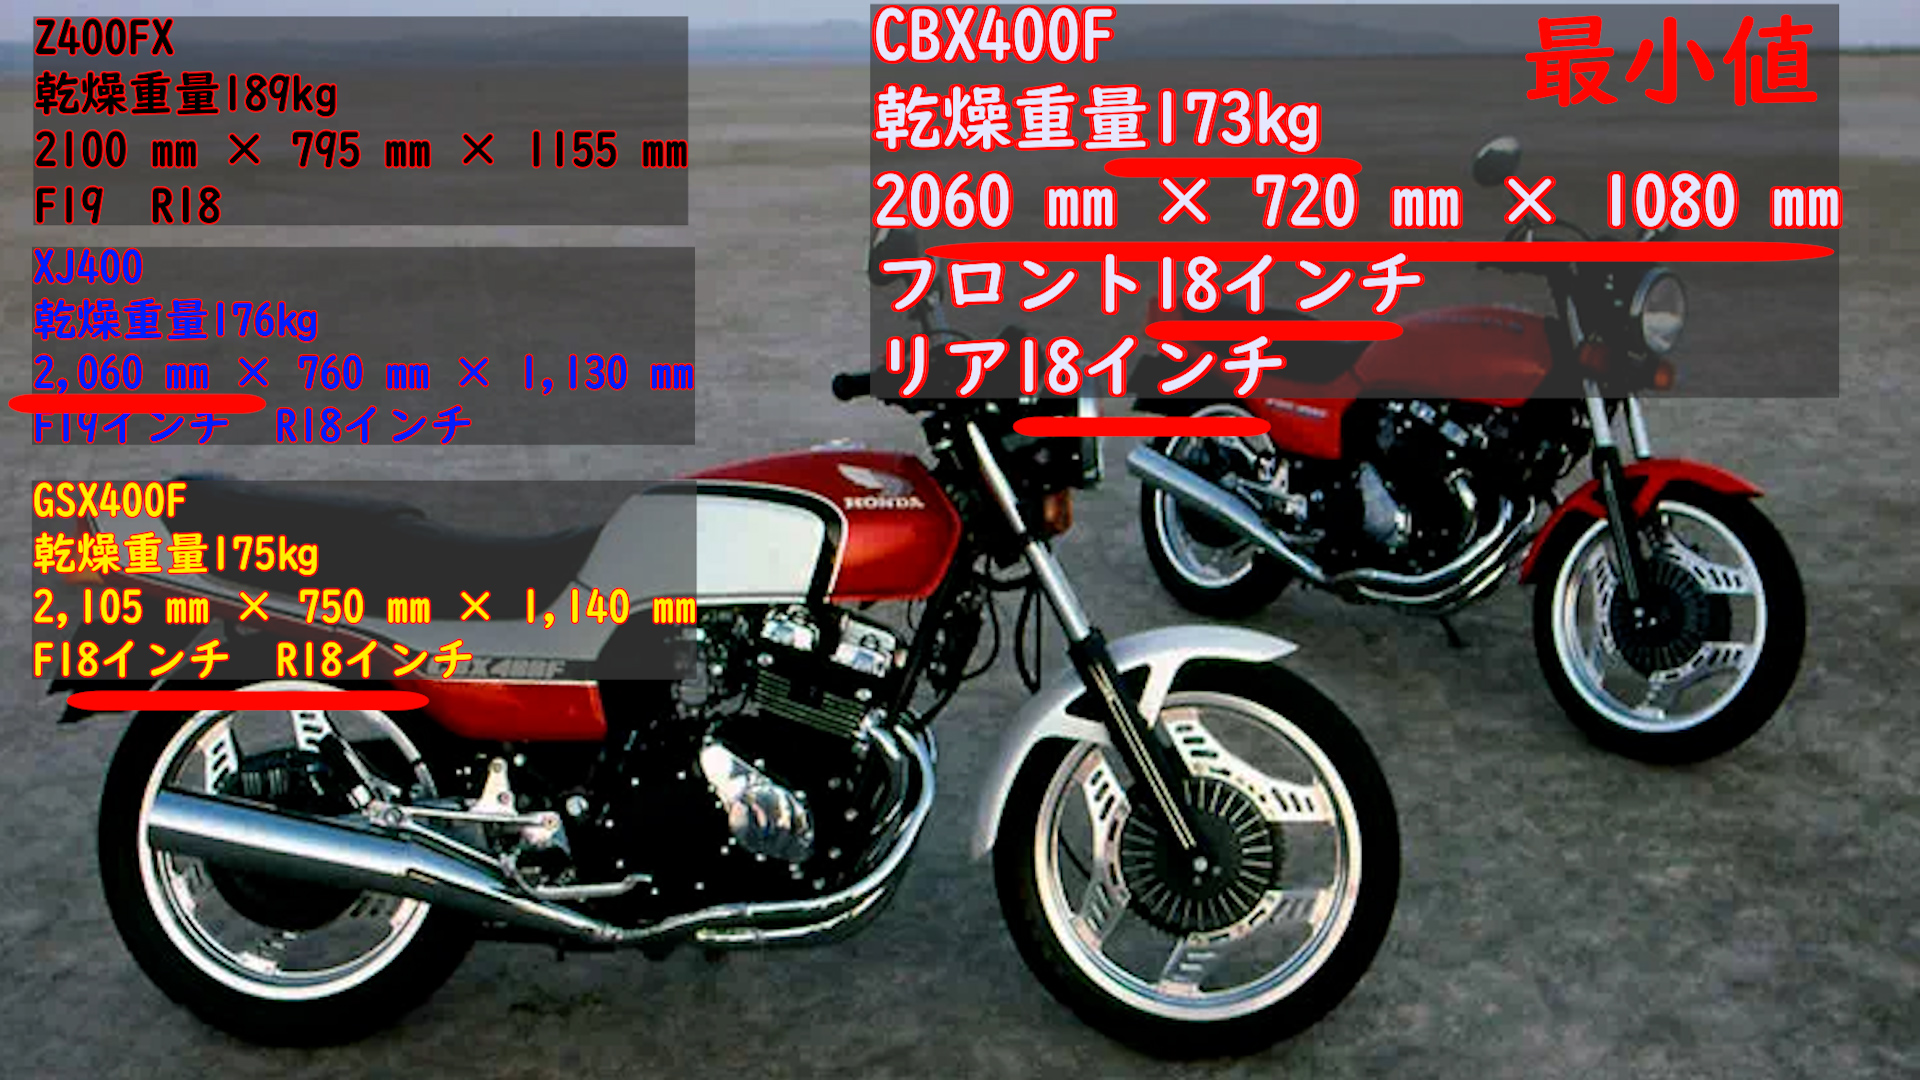 CBX400Fとはどんなバイクか | ツーリングSR500とCBX550F